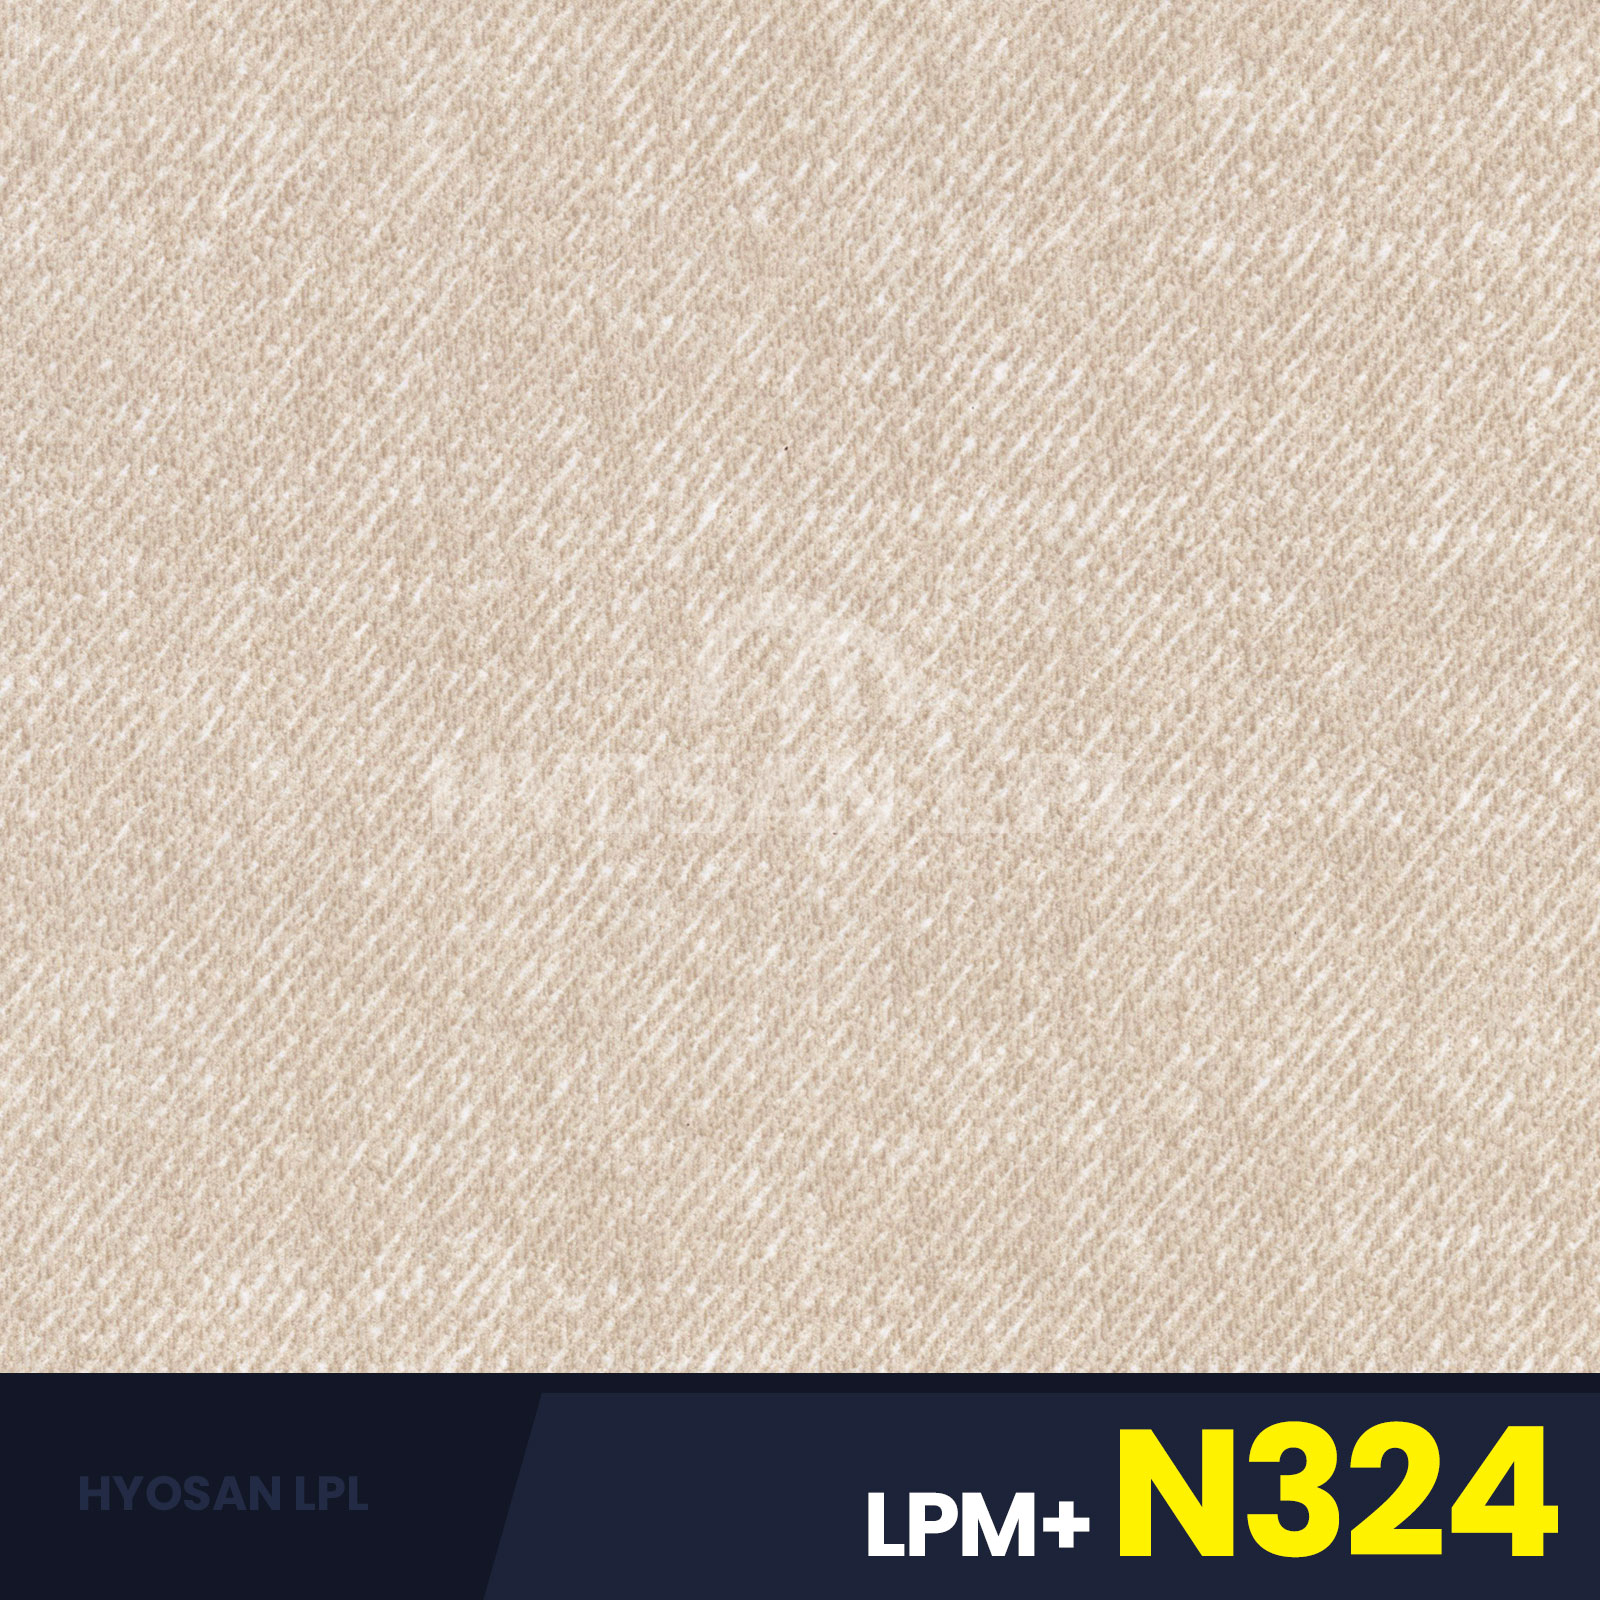 LPM+N324